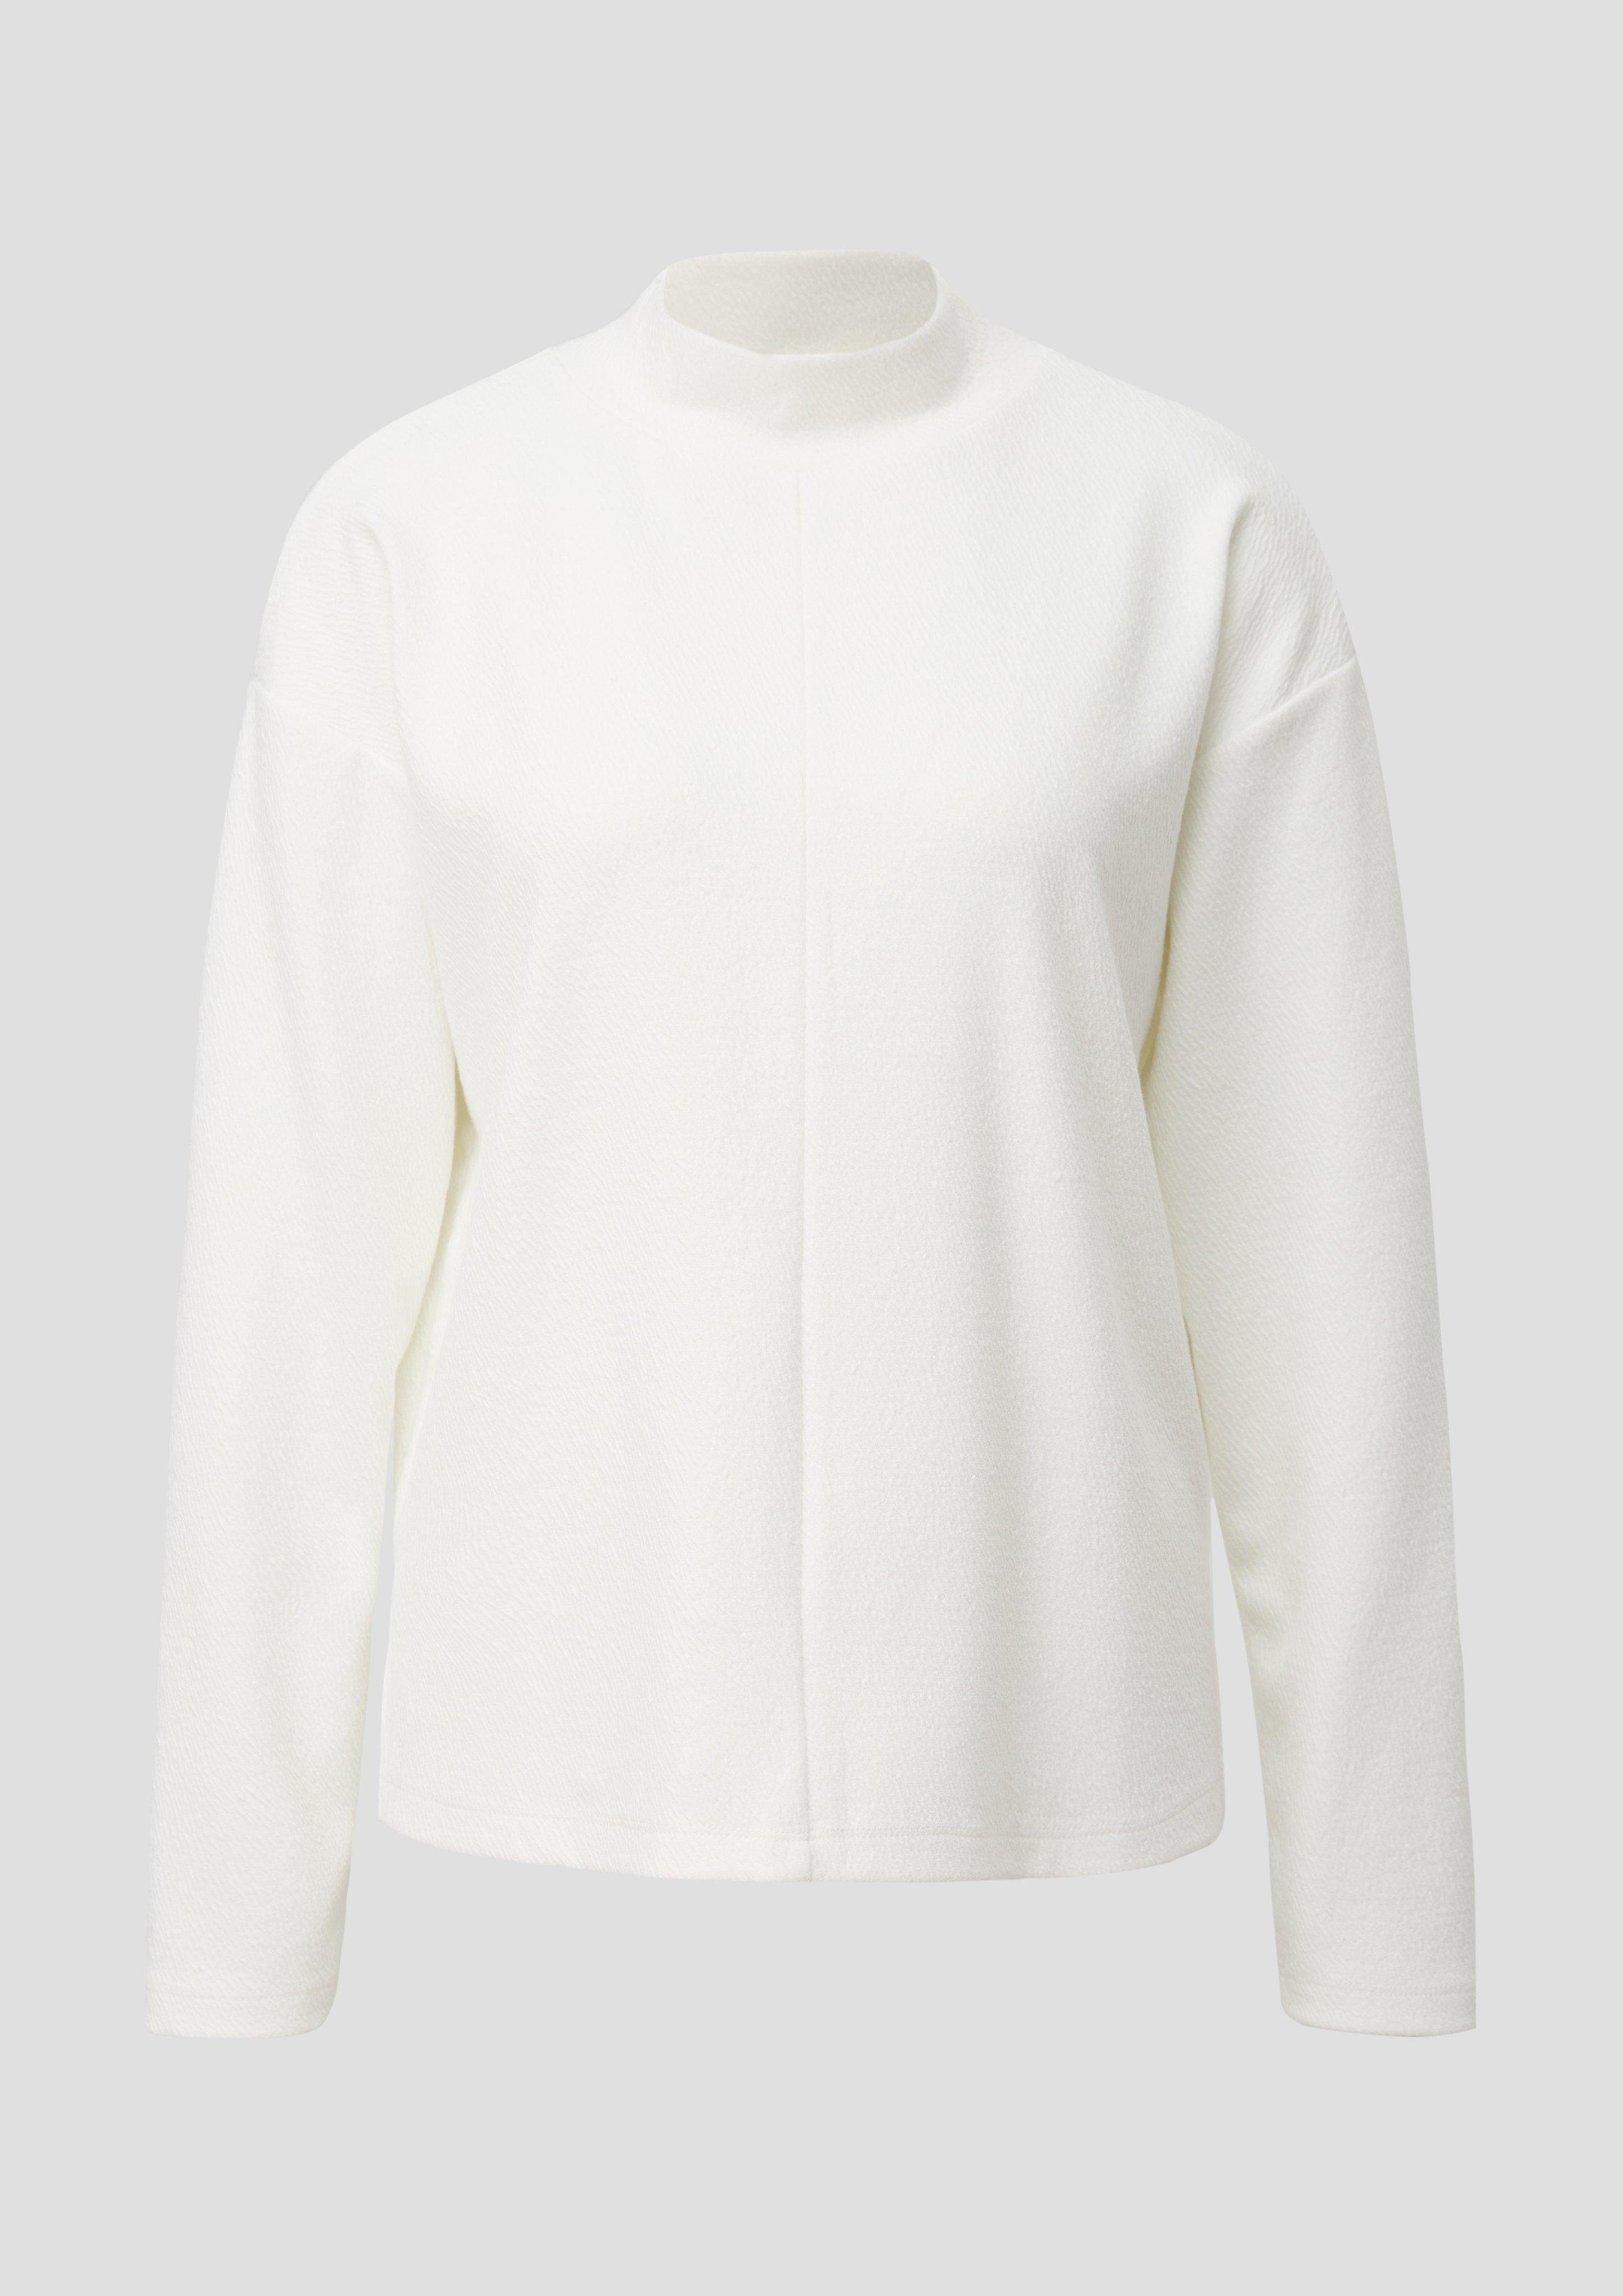 Doubleface-Sweatshirt ecru mit Teilungsnähte Musterstruktur Sweatshirt s.Oliver